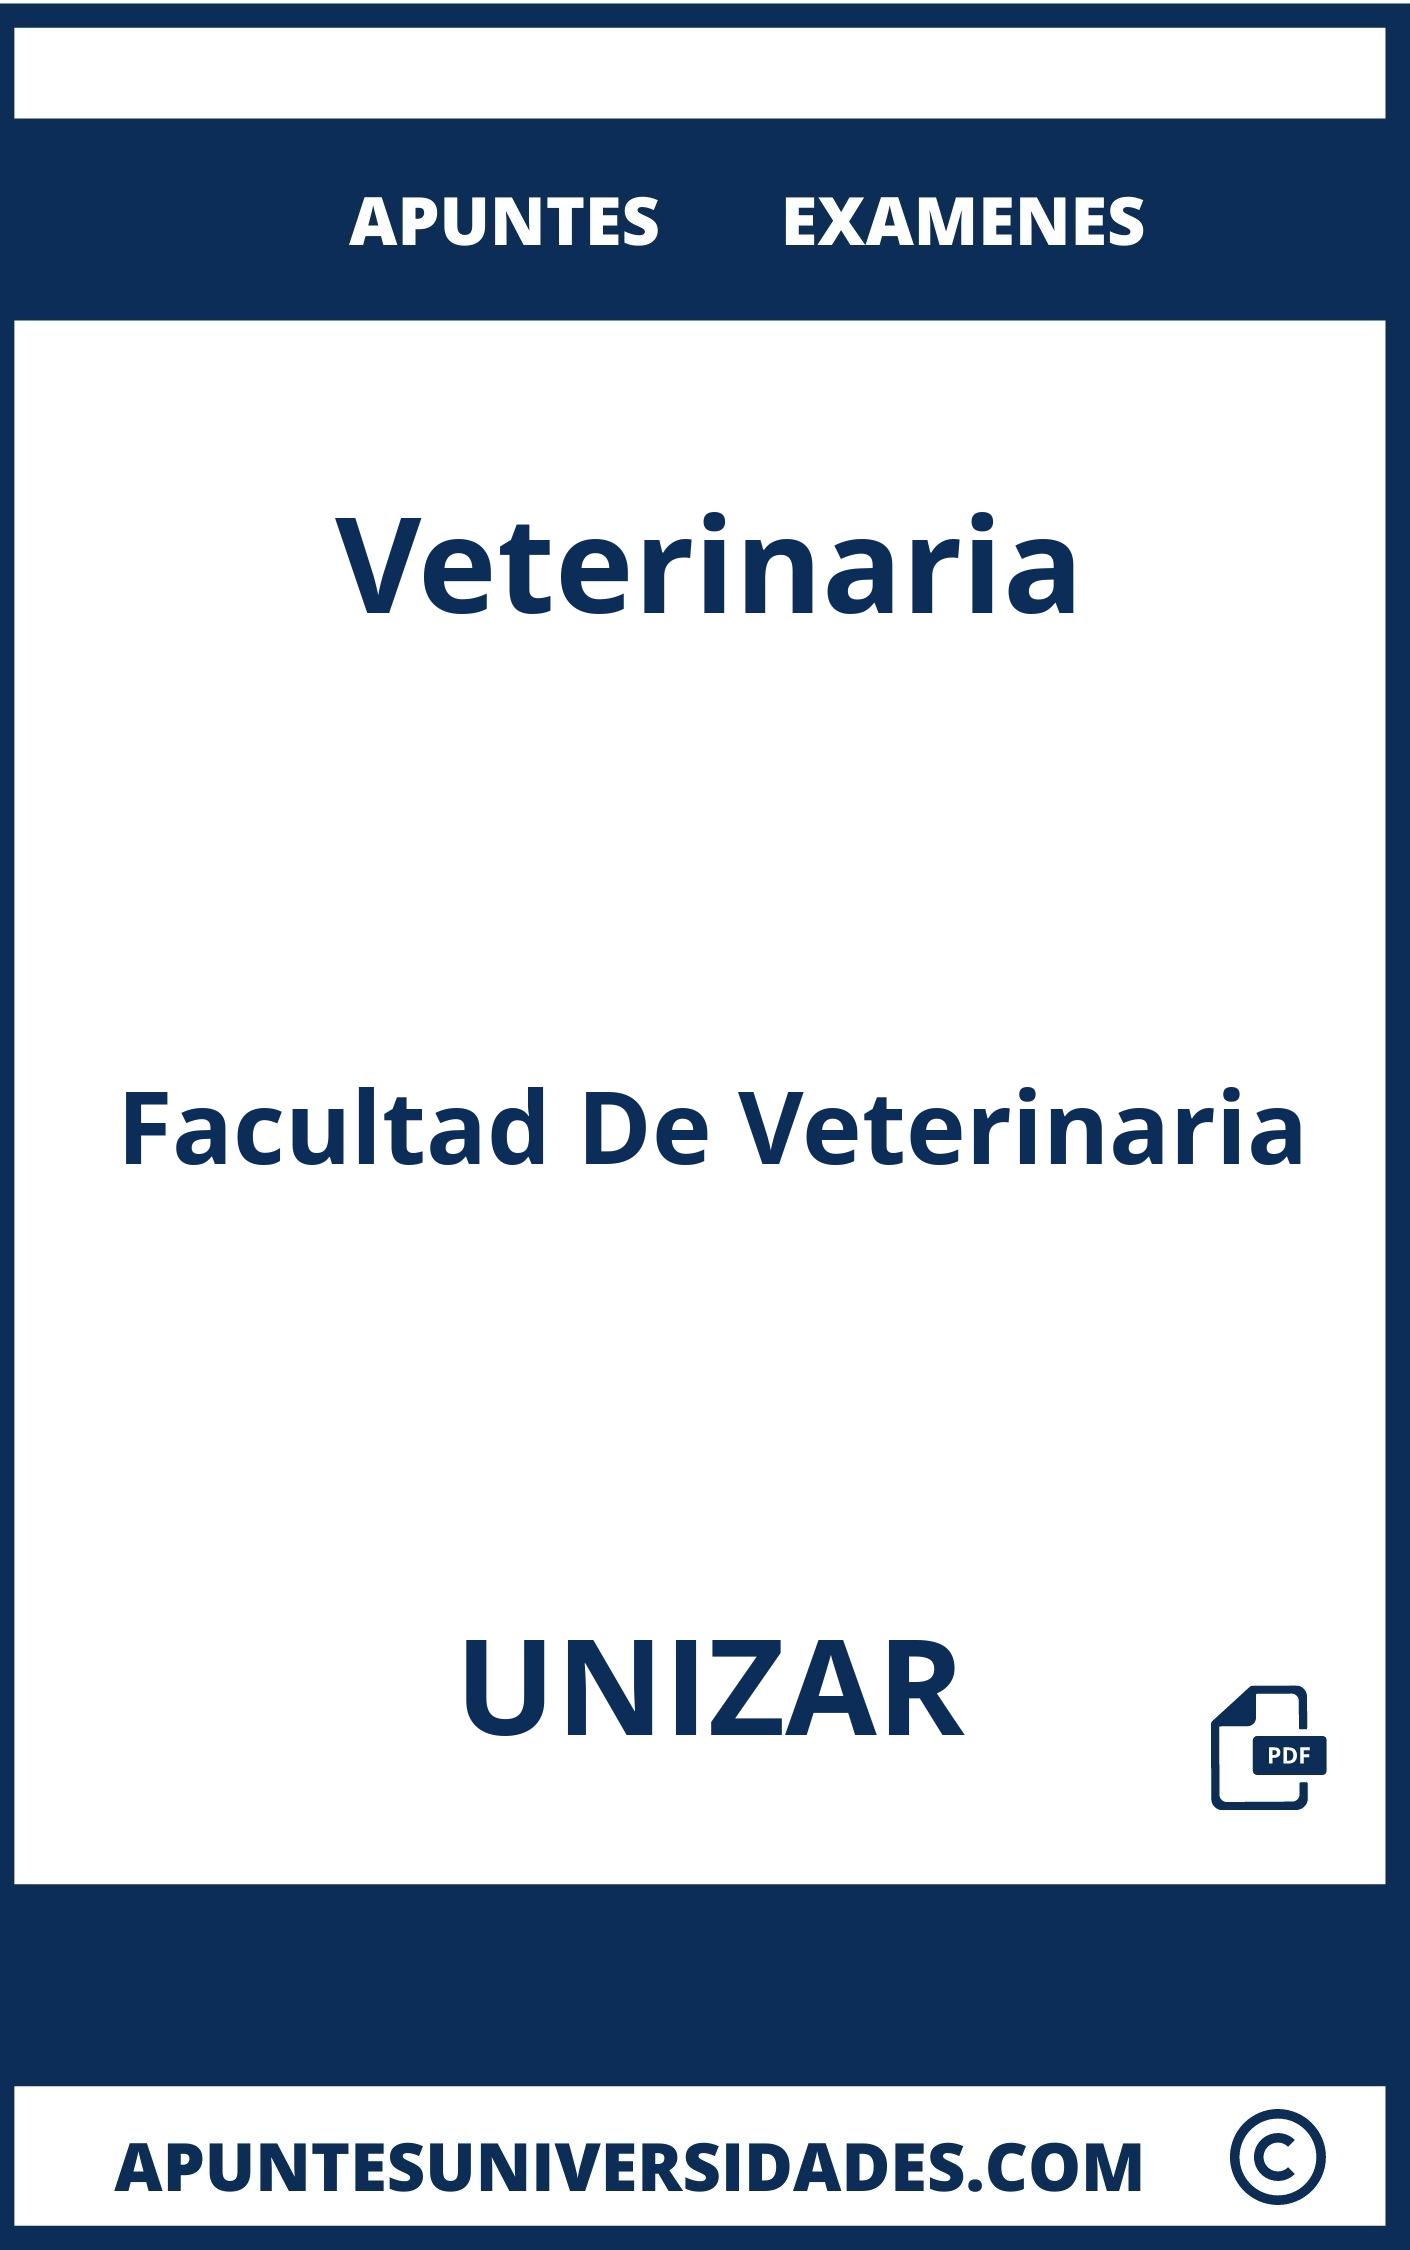 Veterinaria UNIZAR Examenes Apuntes